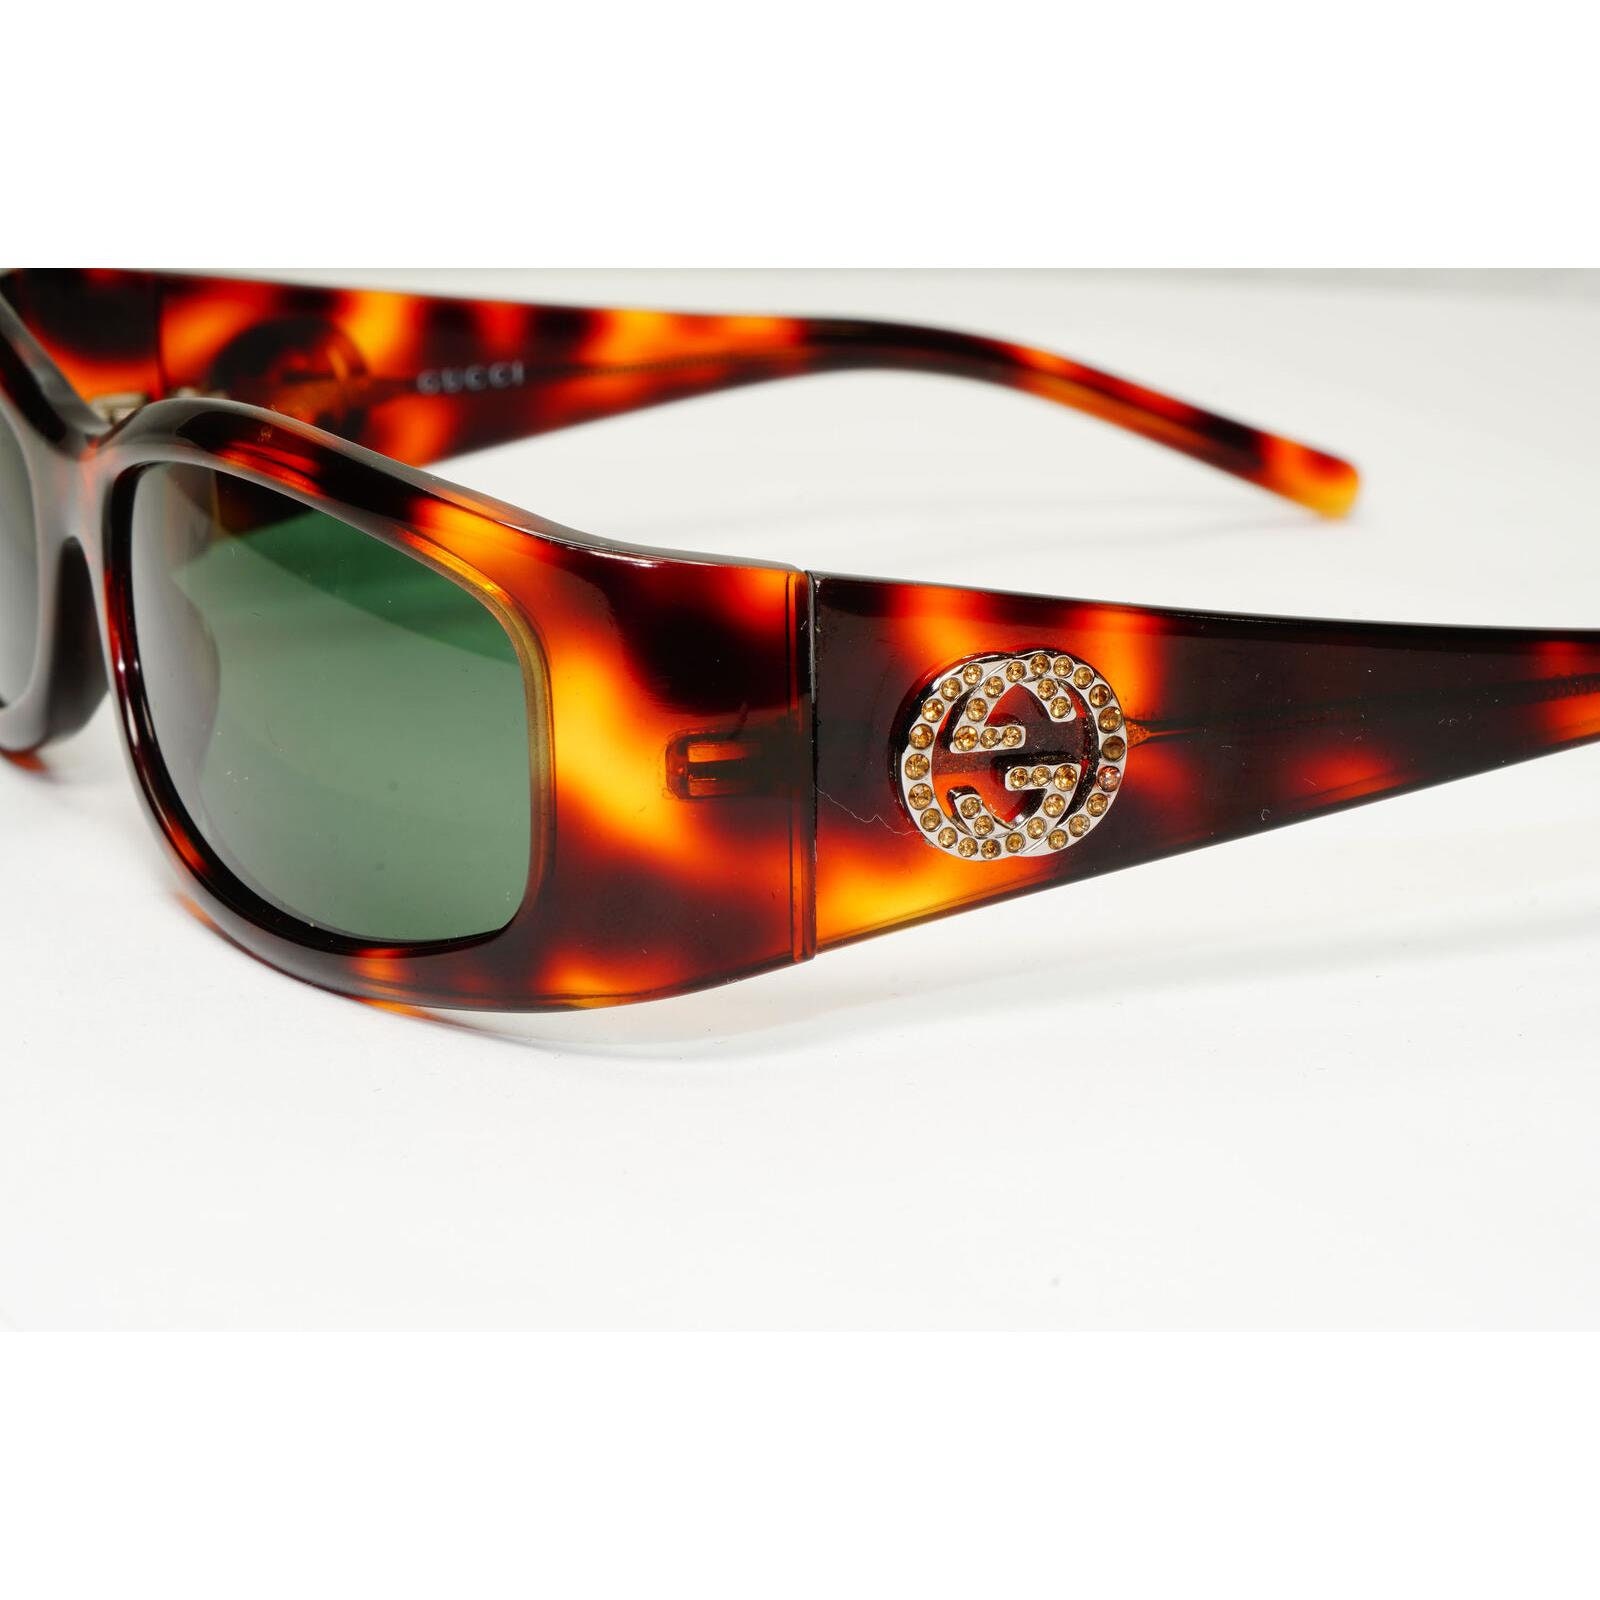 Gucci - Rectangular Sunglasses with GG - Tortoiseshell Orange